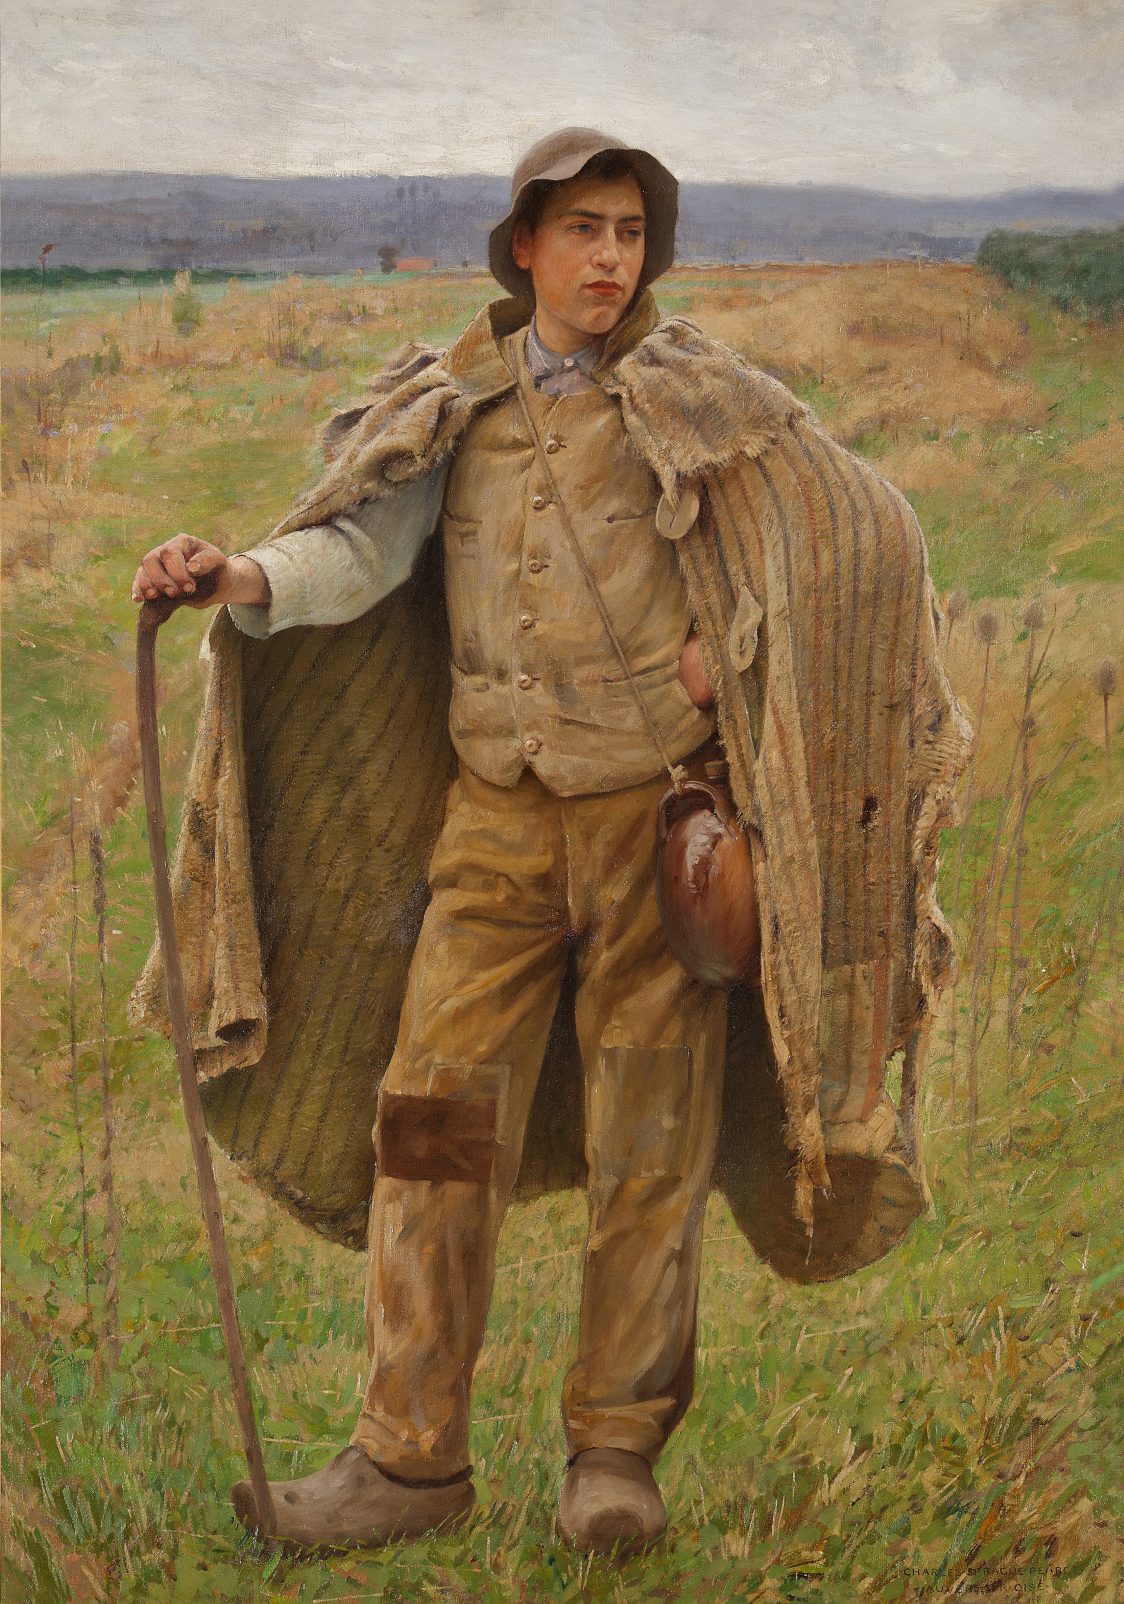 A portrait of a shepherd